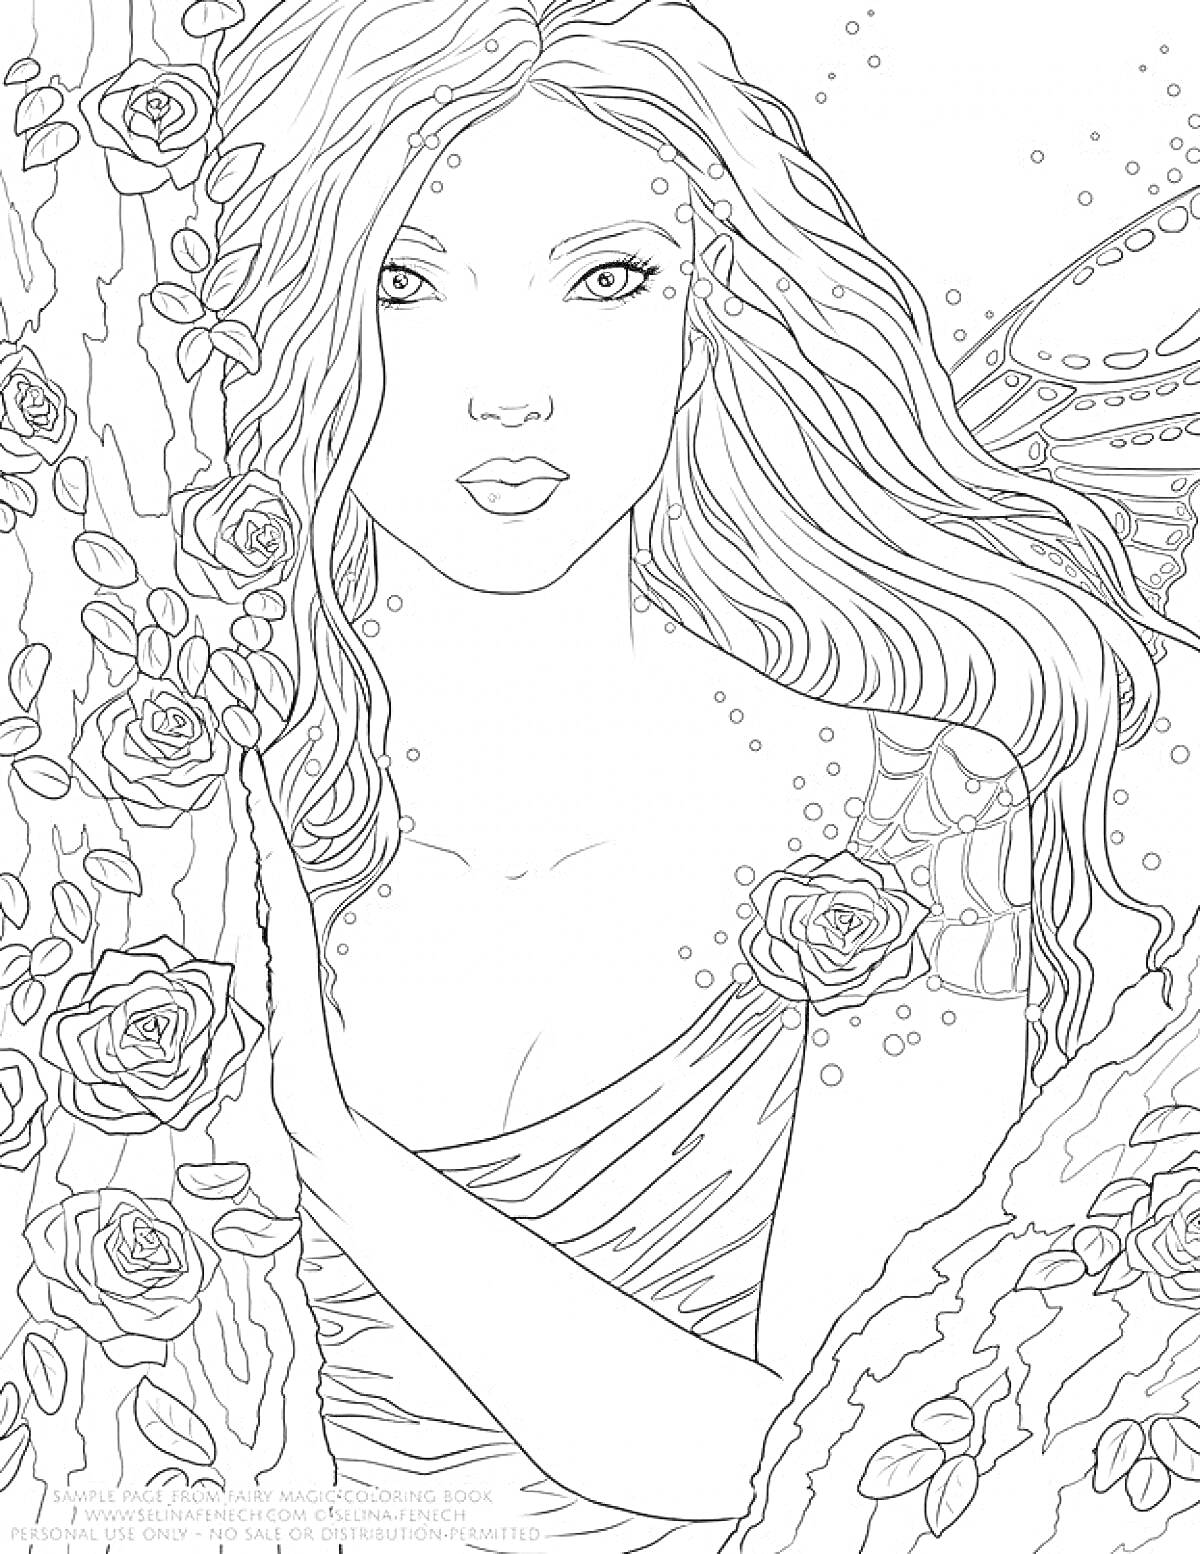 Раскраска Девушка в лесу с длинными волосами, розами, бабочками и узорами